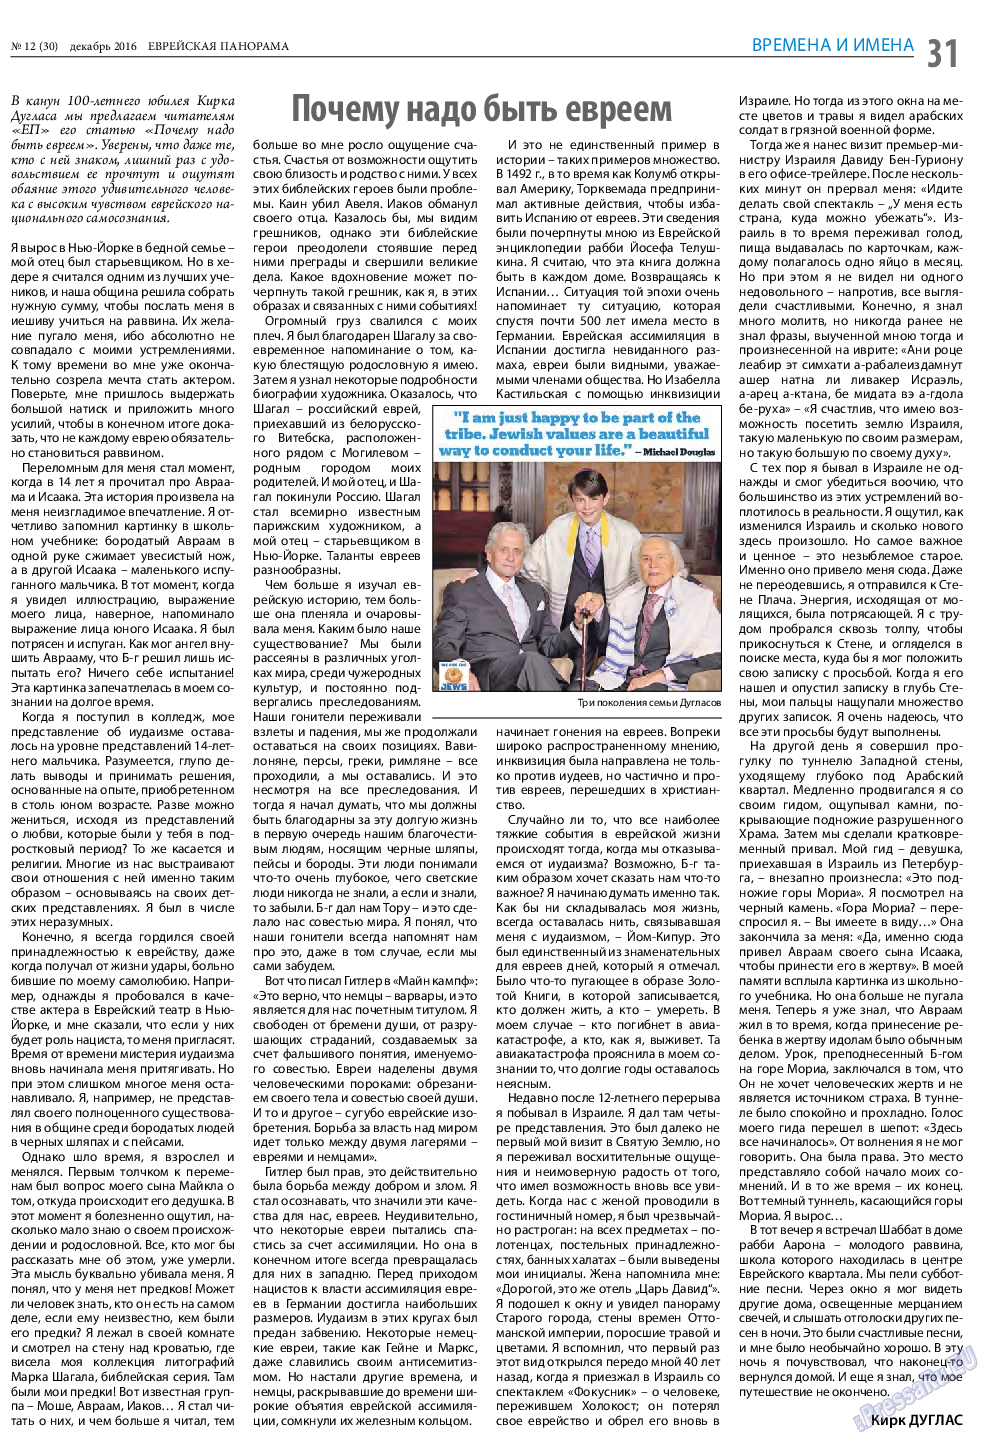 Еврейская панорама (газета). 2016 год, номер 12, стр. 31